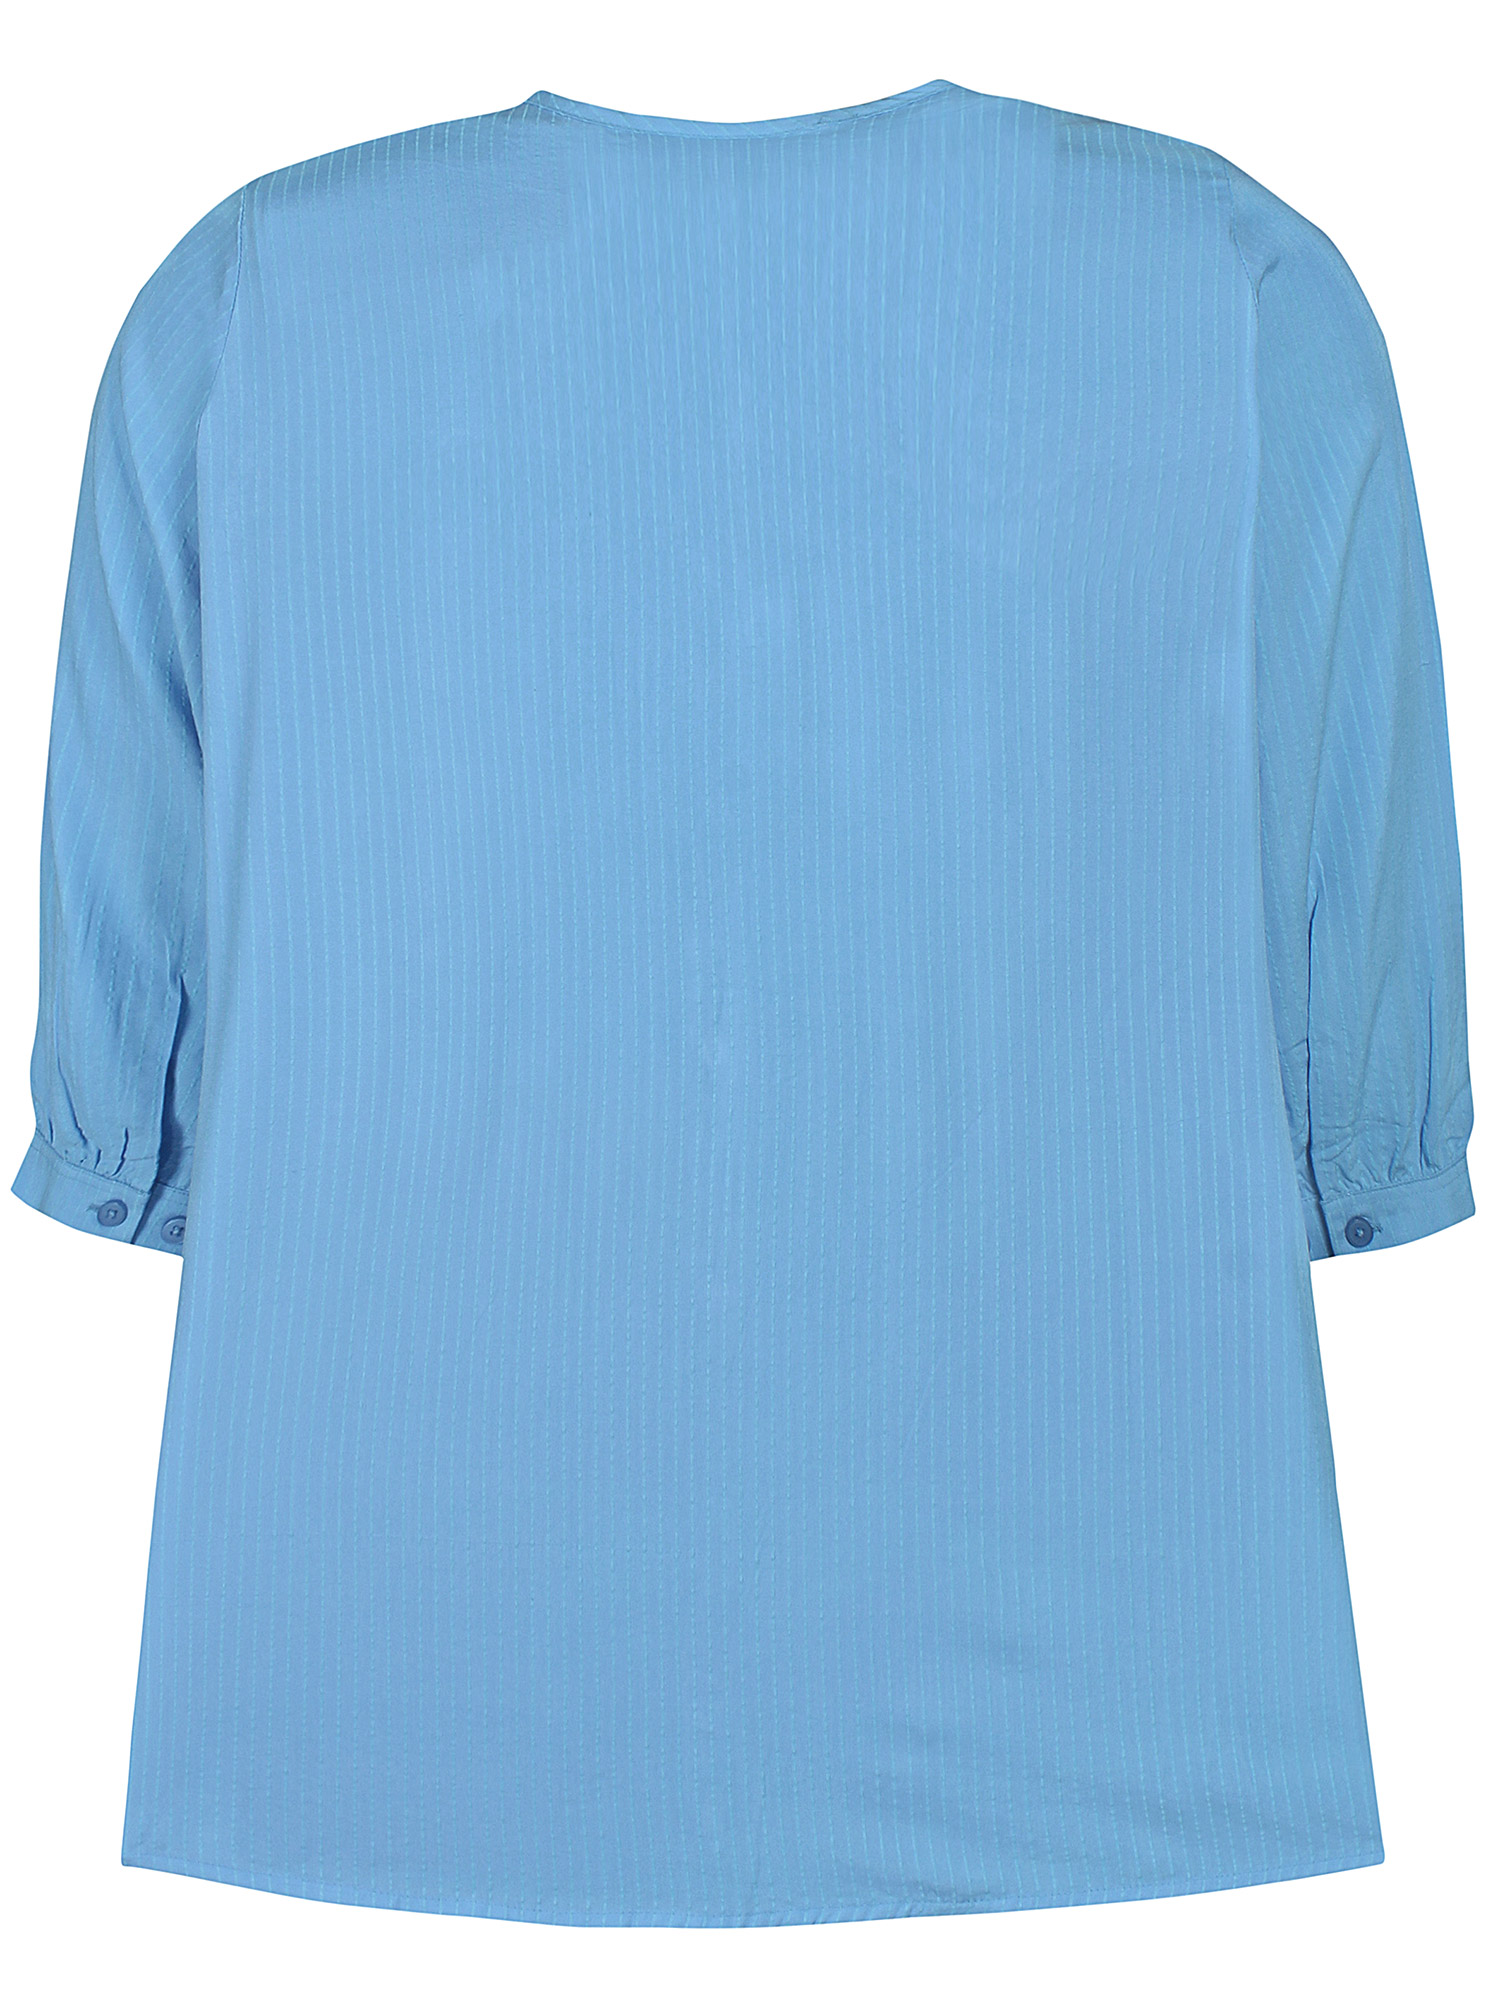 MELANY - Lyseblå viskoseskjorte med blonde fra Zhenzi